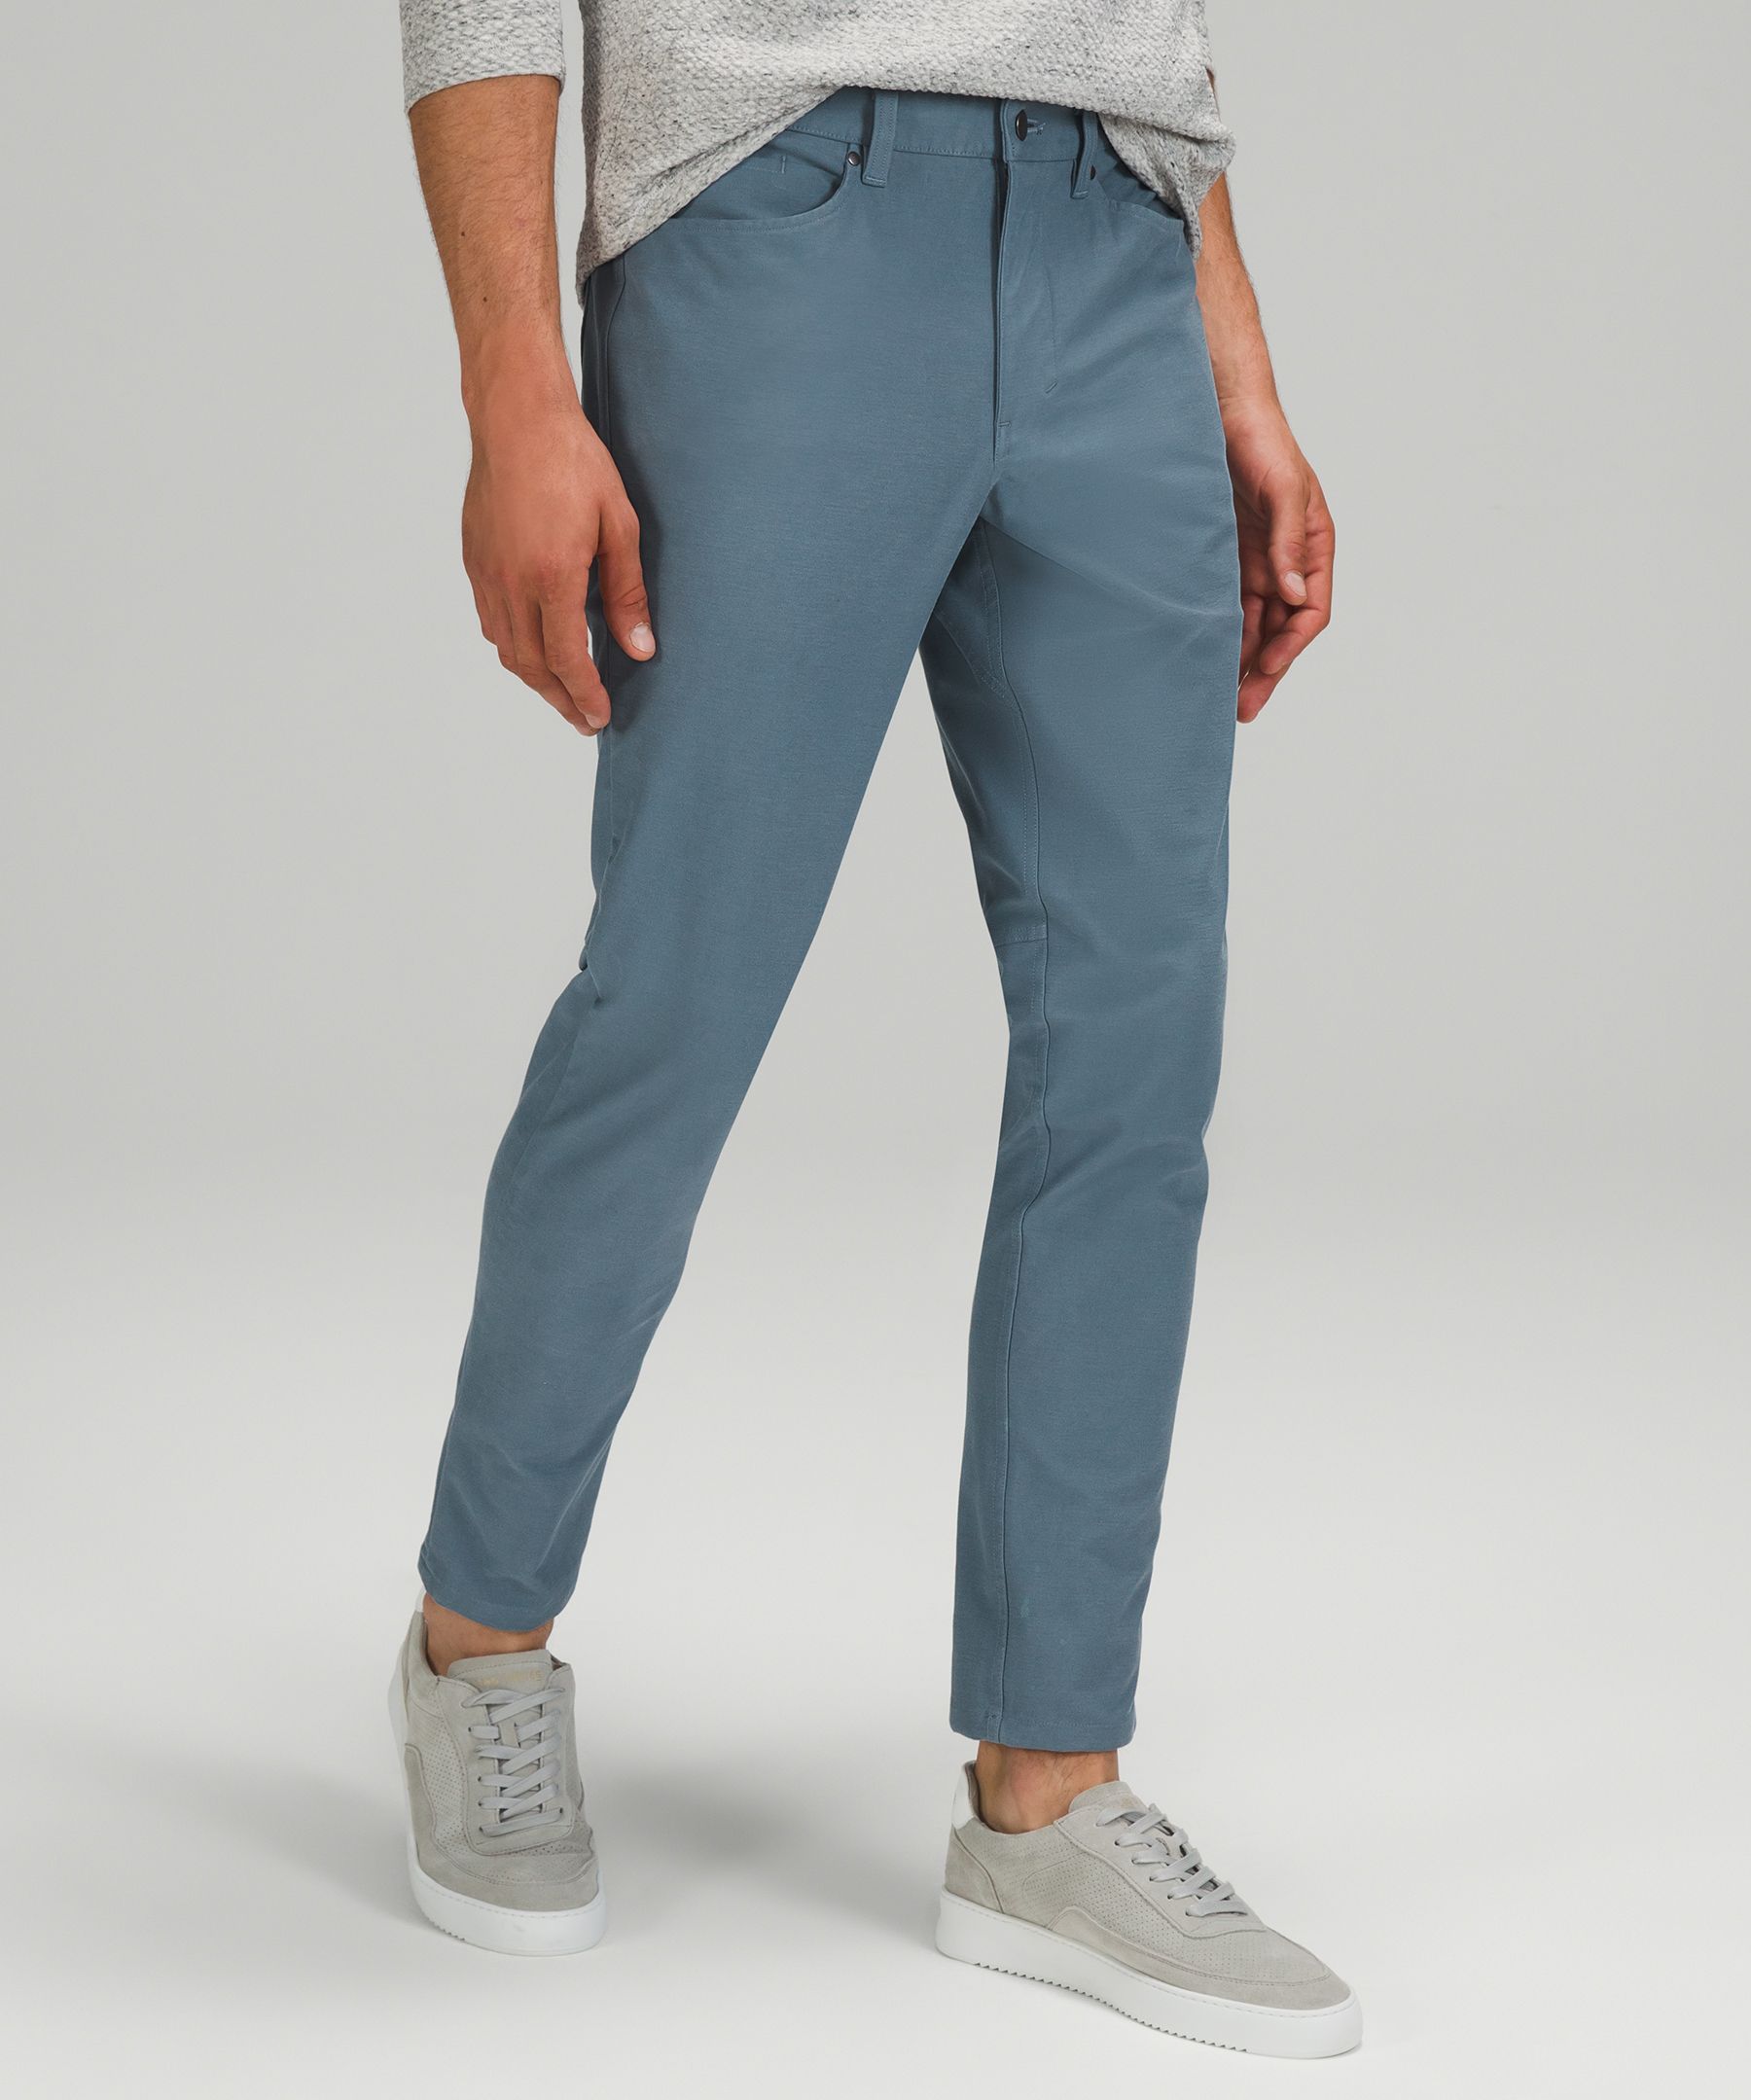 ABC Slim-Fit 5 Pocket Pant 37L *Warpstreme | Men's Trousers